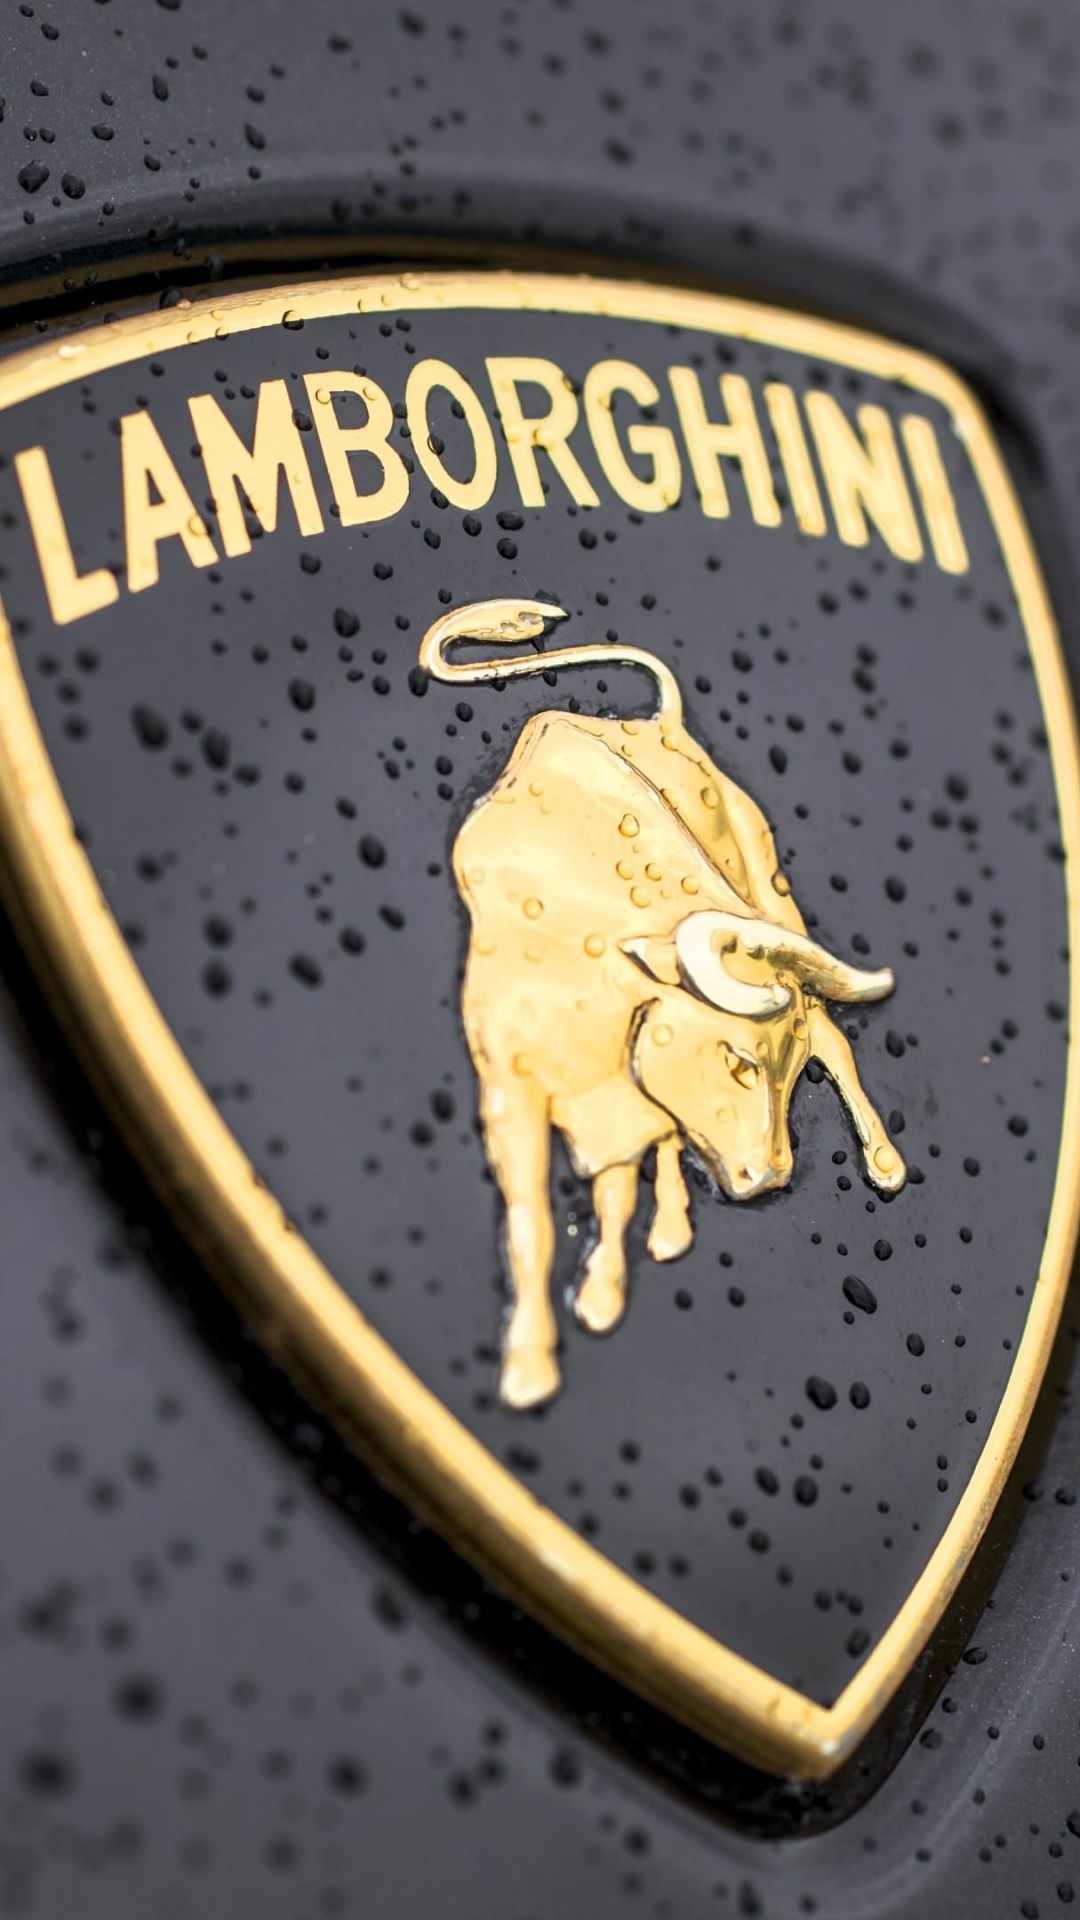 Lamborghini Logo Wallpaper for SAMSUNG Galaxy Note 3